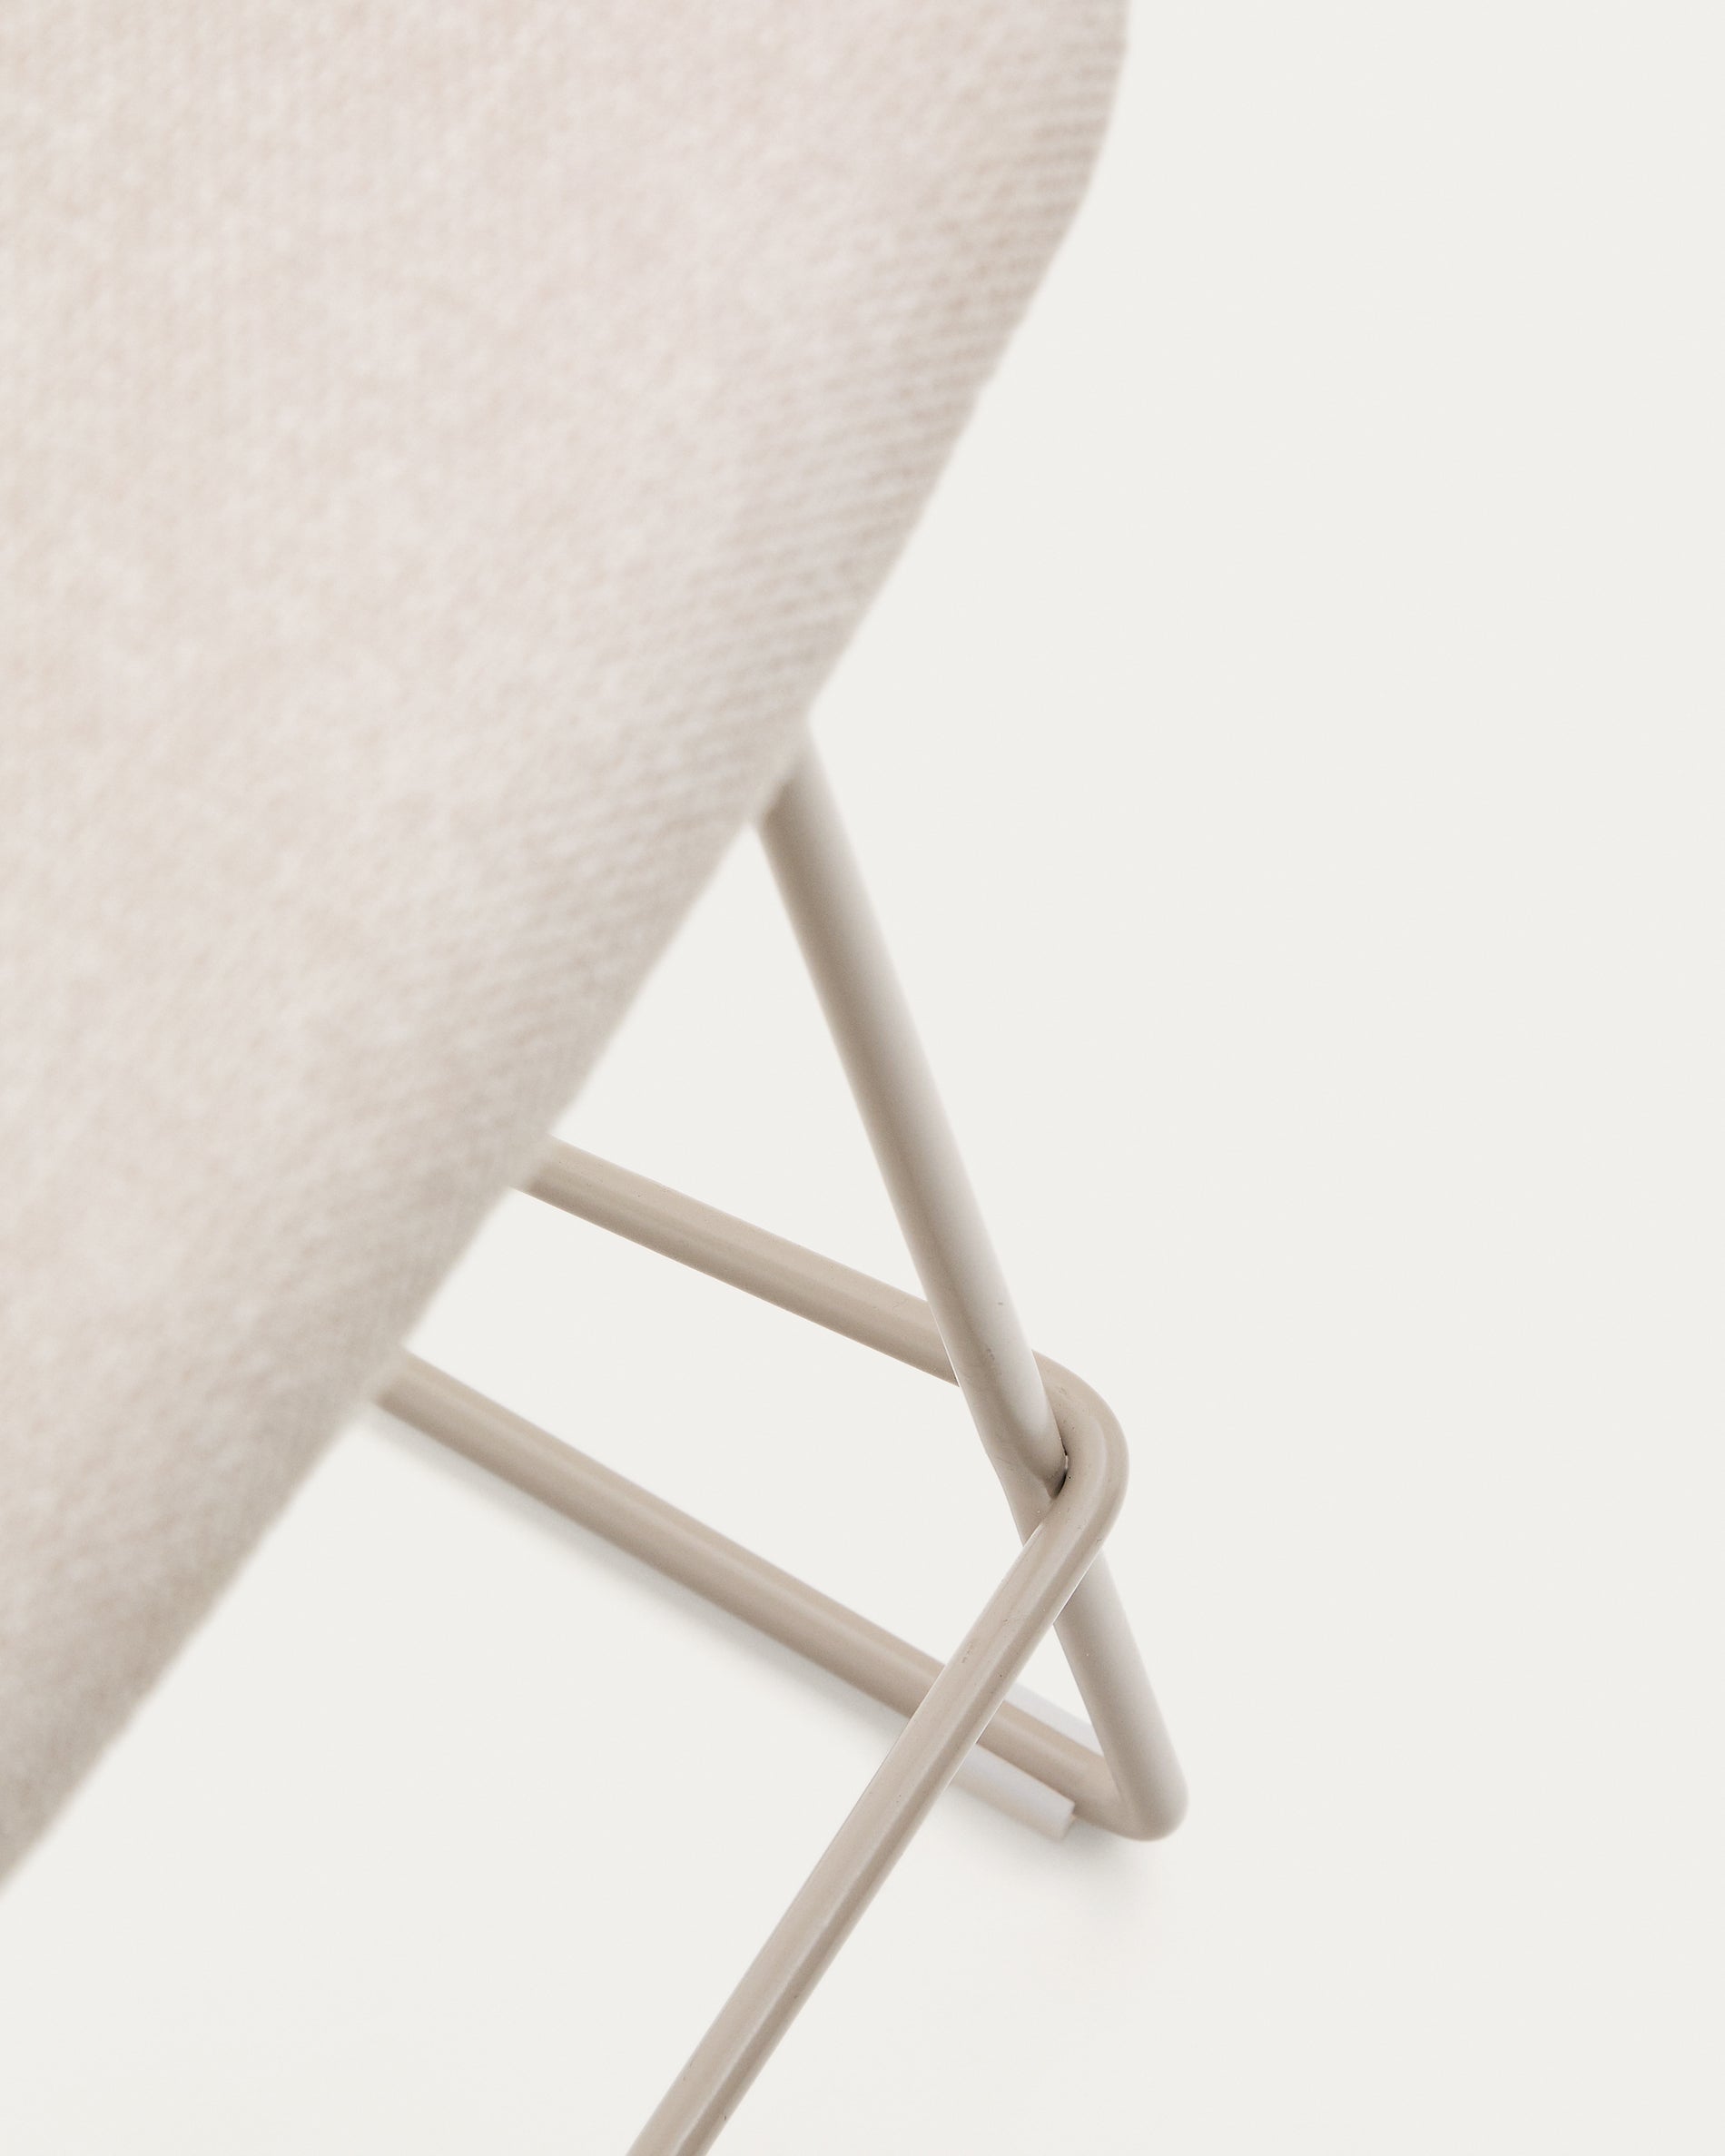 Zahara bézs szék acélból bézs színben, 65 cm magasságban